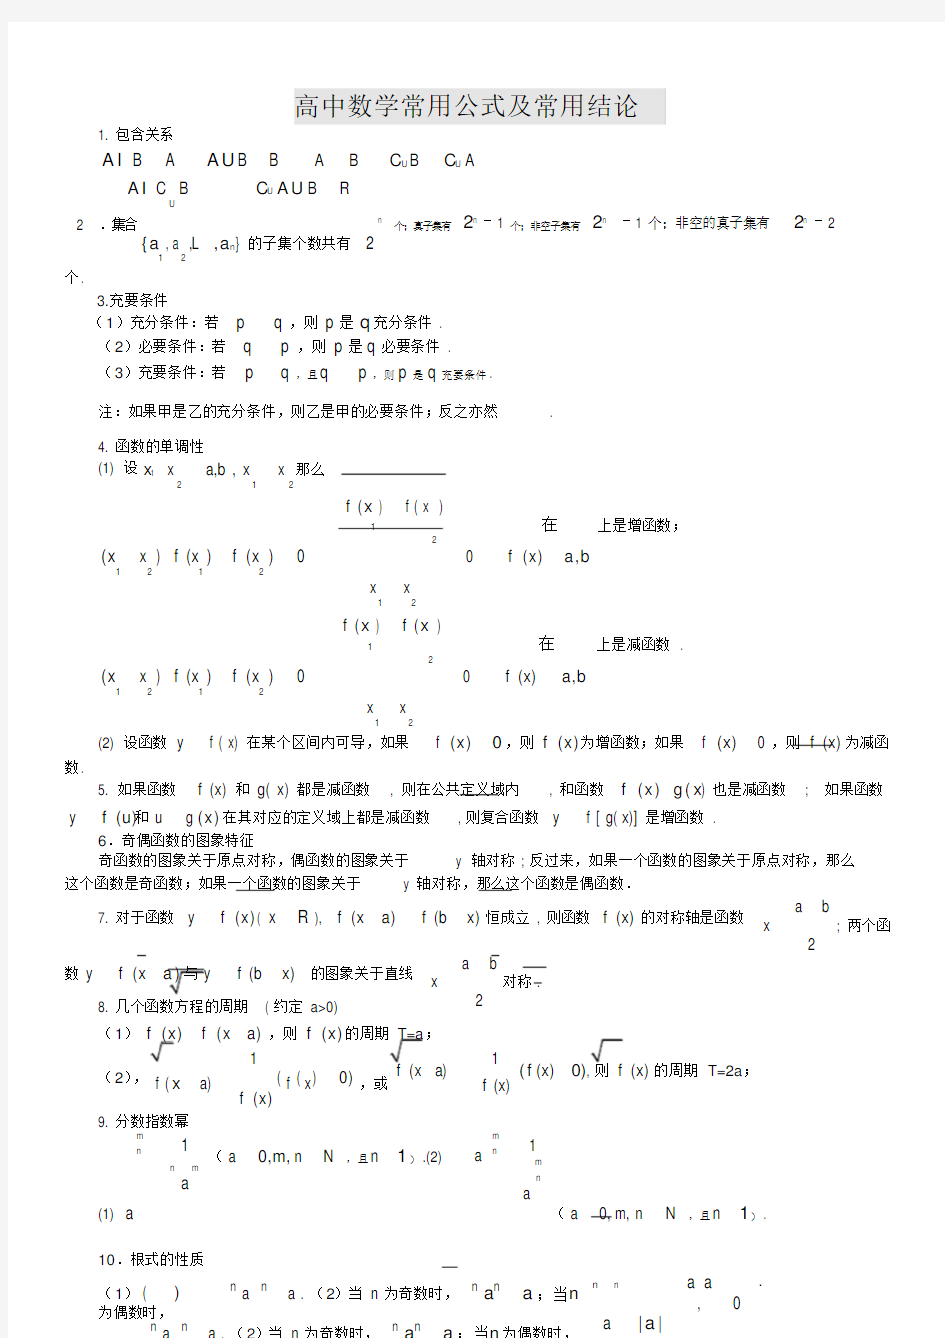 高中数学公式大全(完整版)(20210127120451)